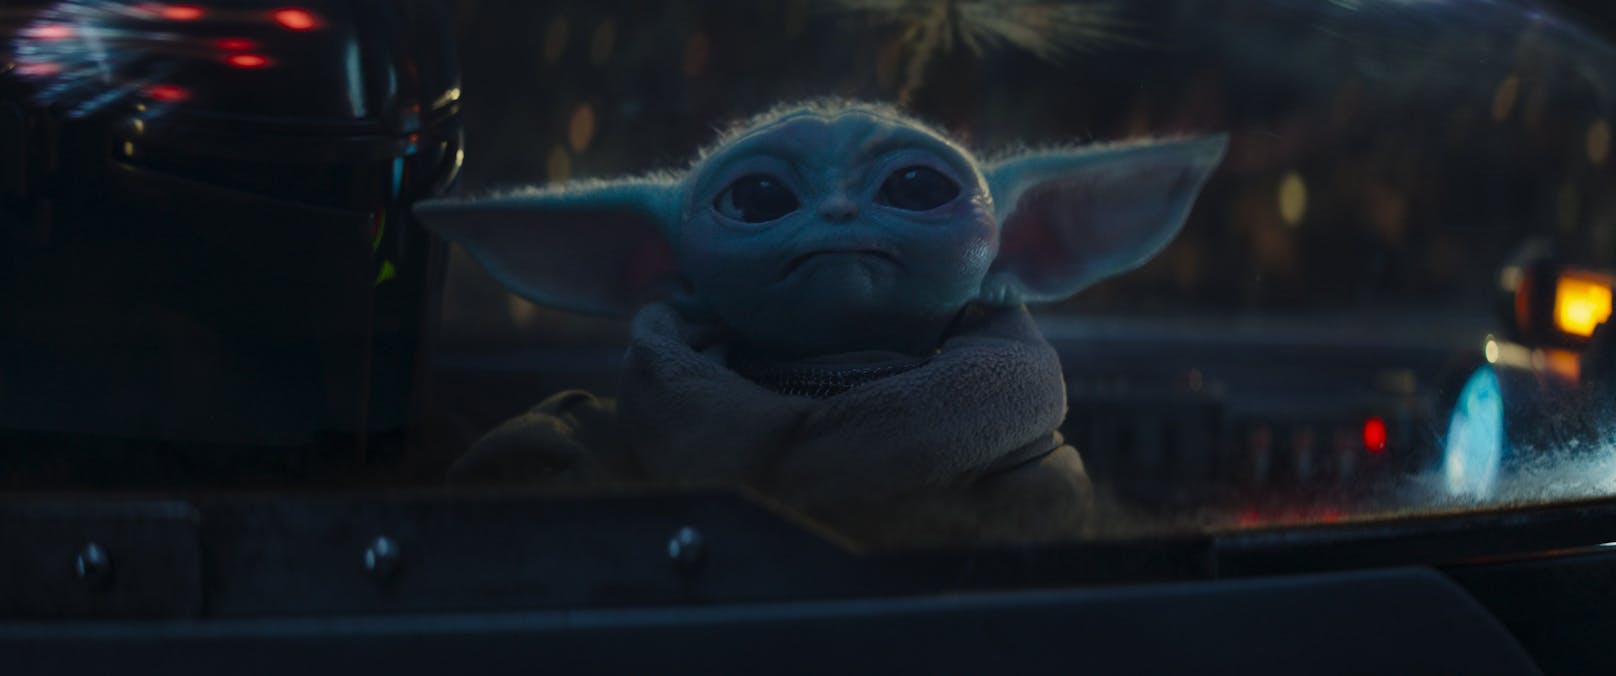 Das Warten auf "Baby Yoda" hat nun ein Ende